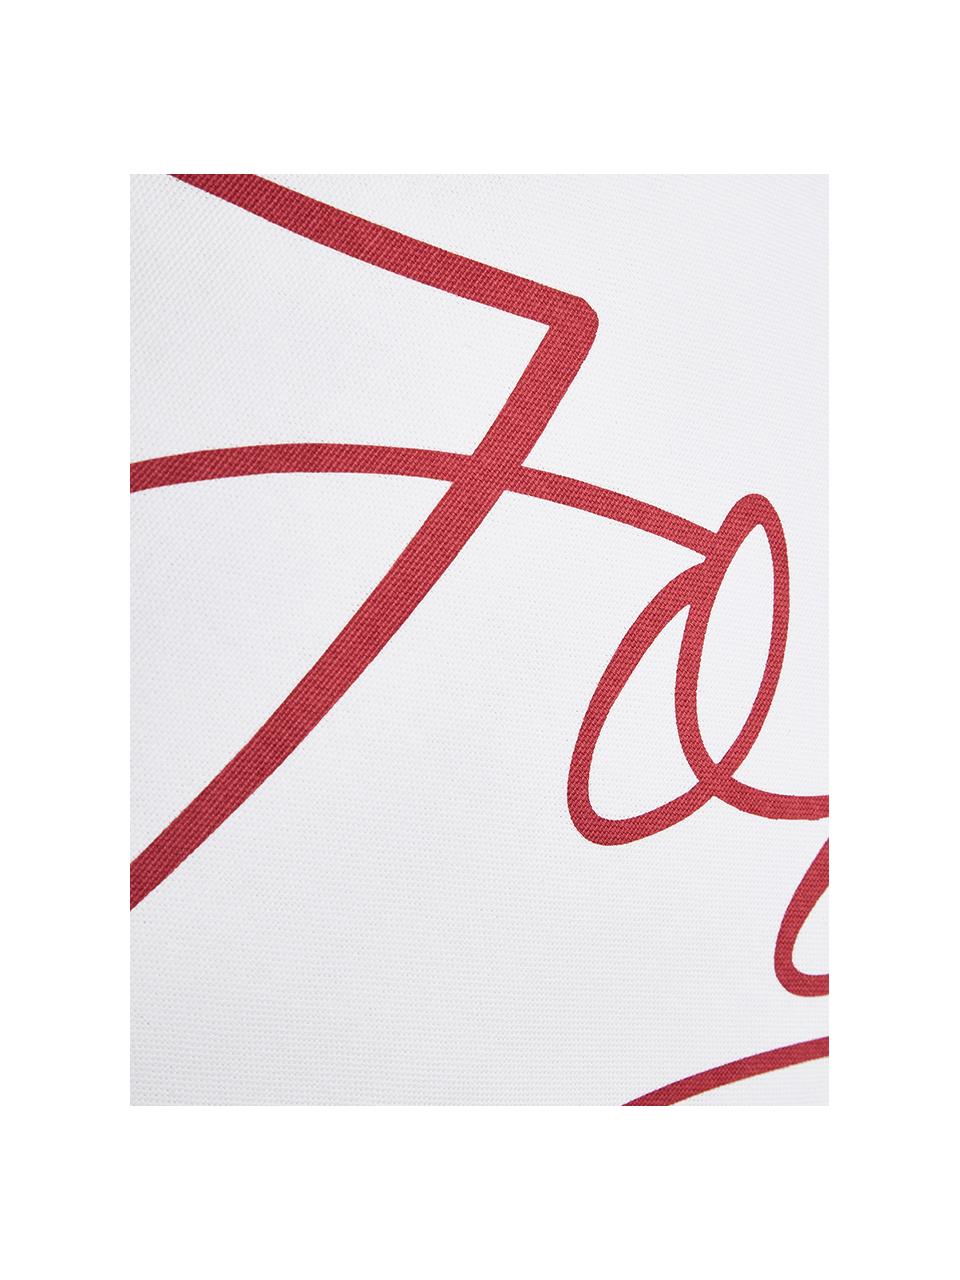 Poszewka na poduszkę Joy, Bawełna, Biały, czerwony, S 40 x D 40 cm